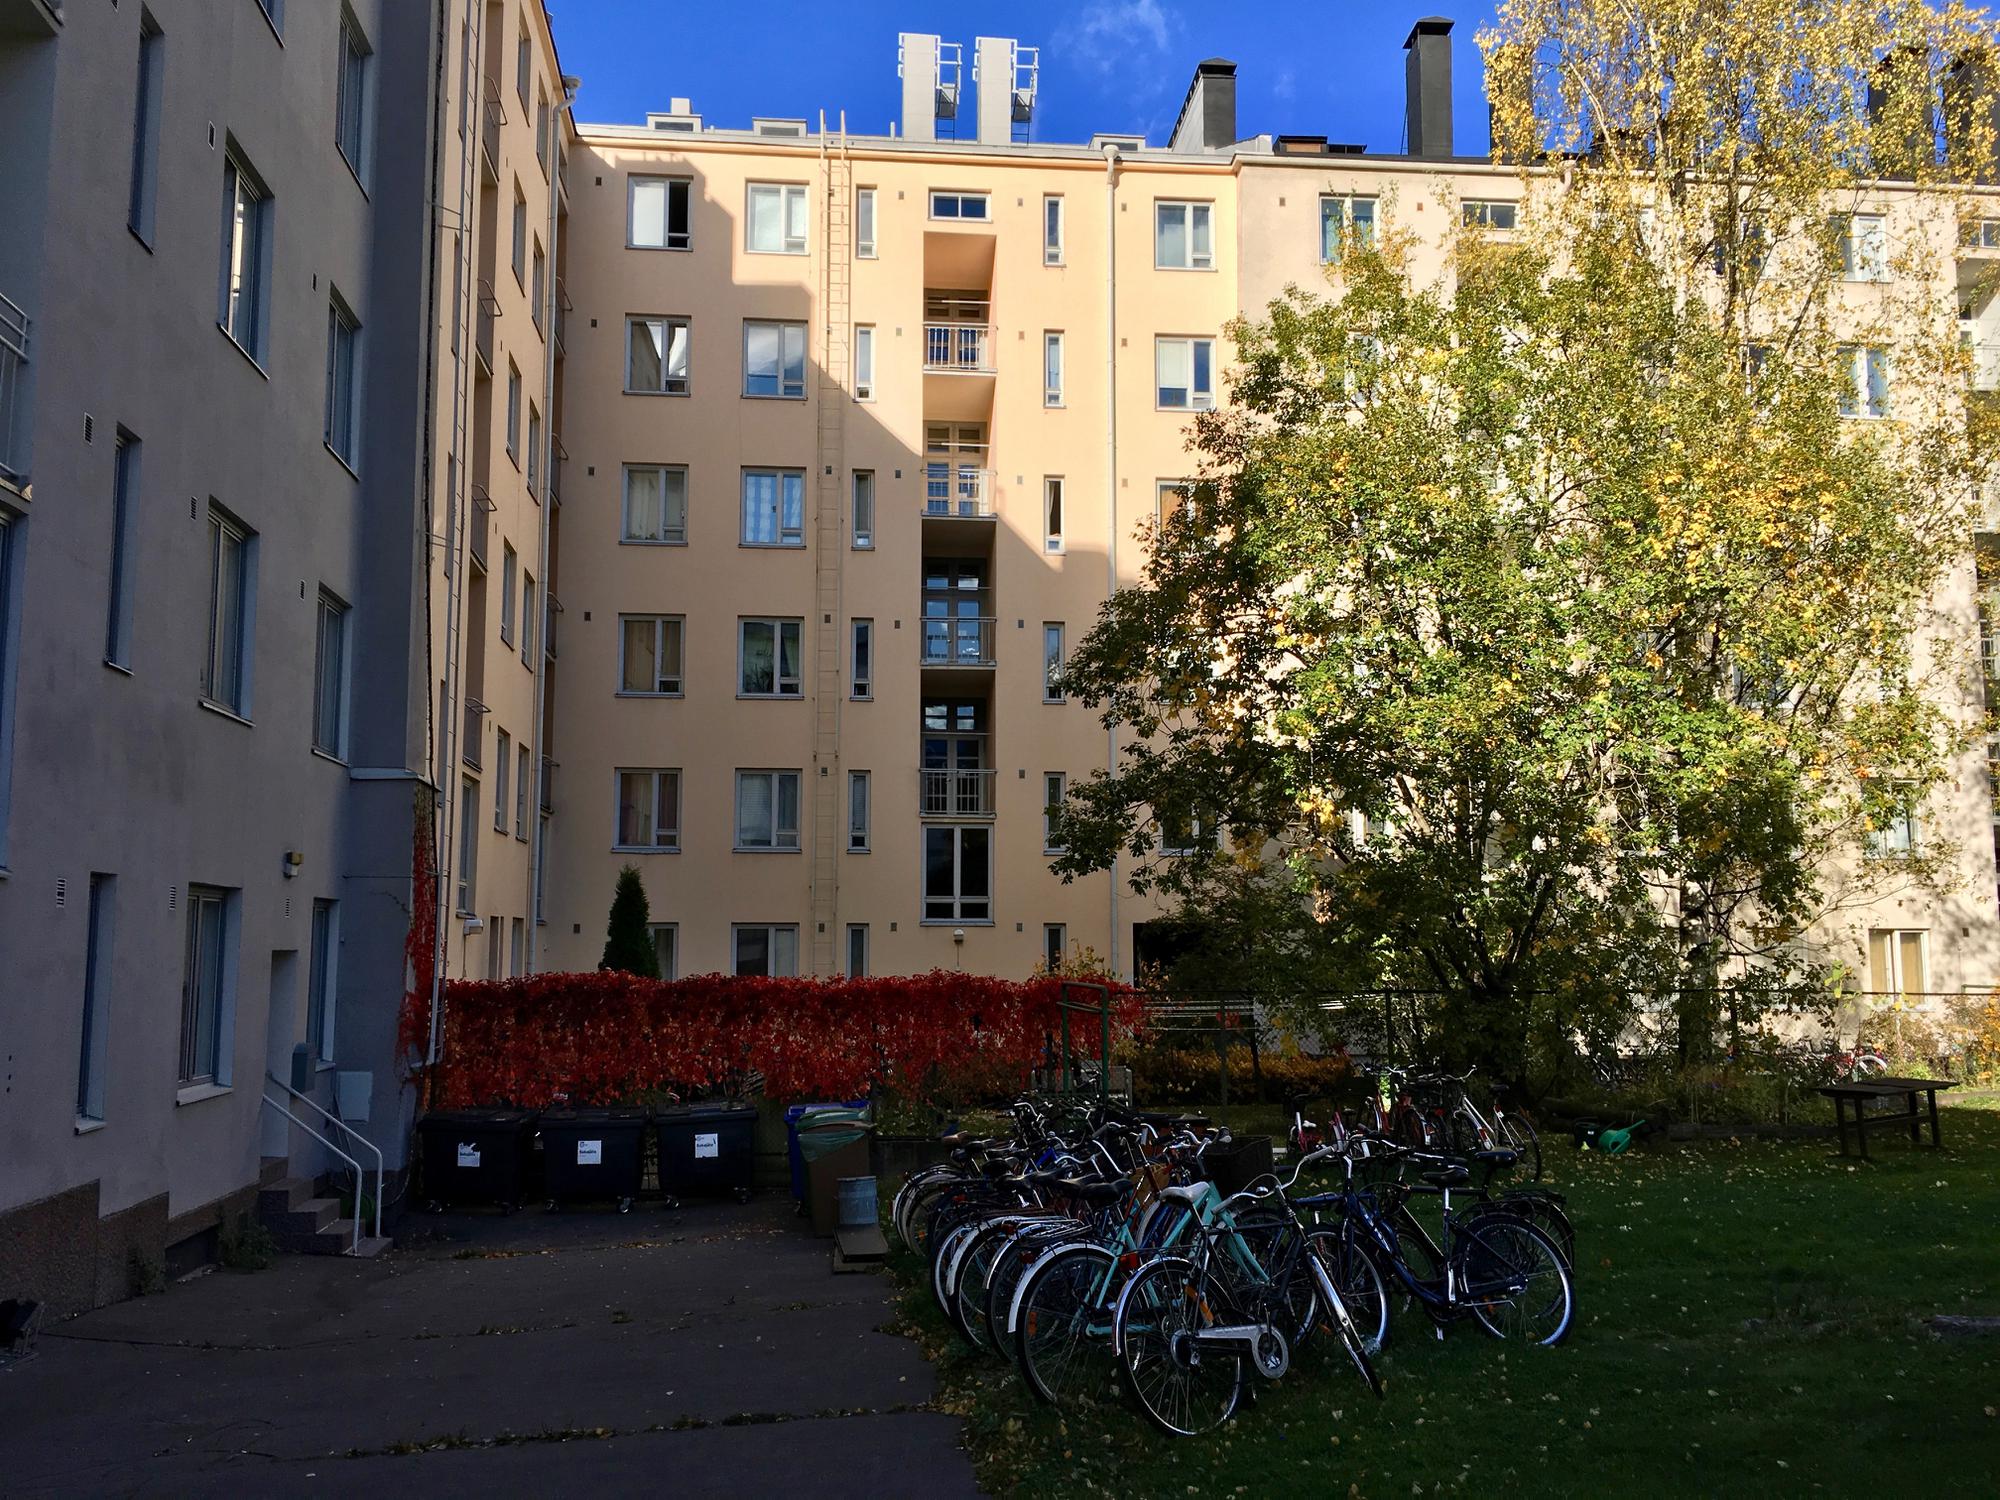 🇫🇮 Хельсинки, Финляндия, октябрь 2016.